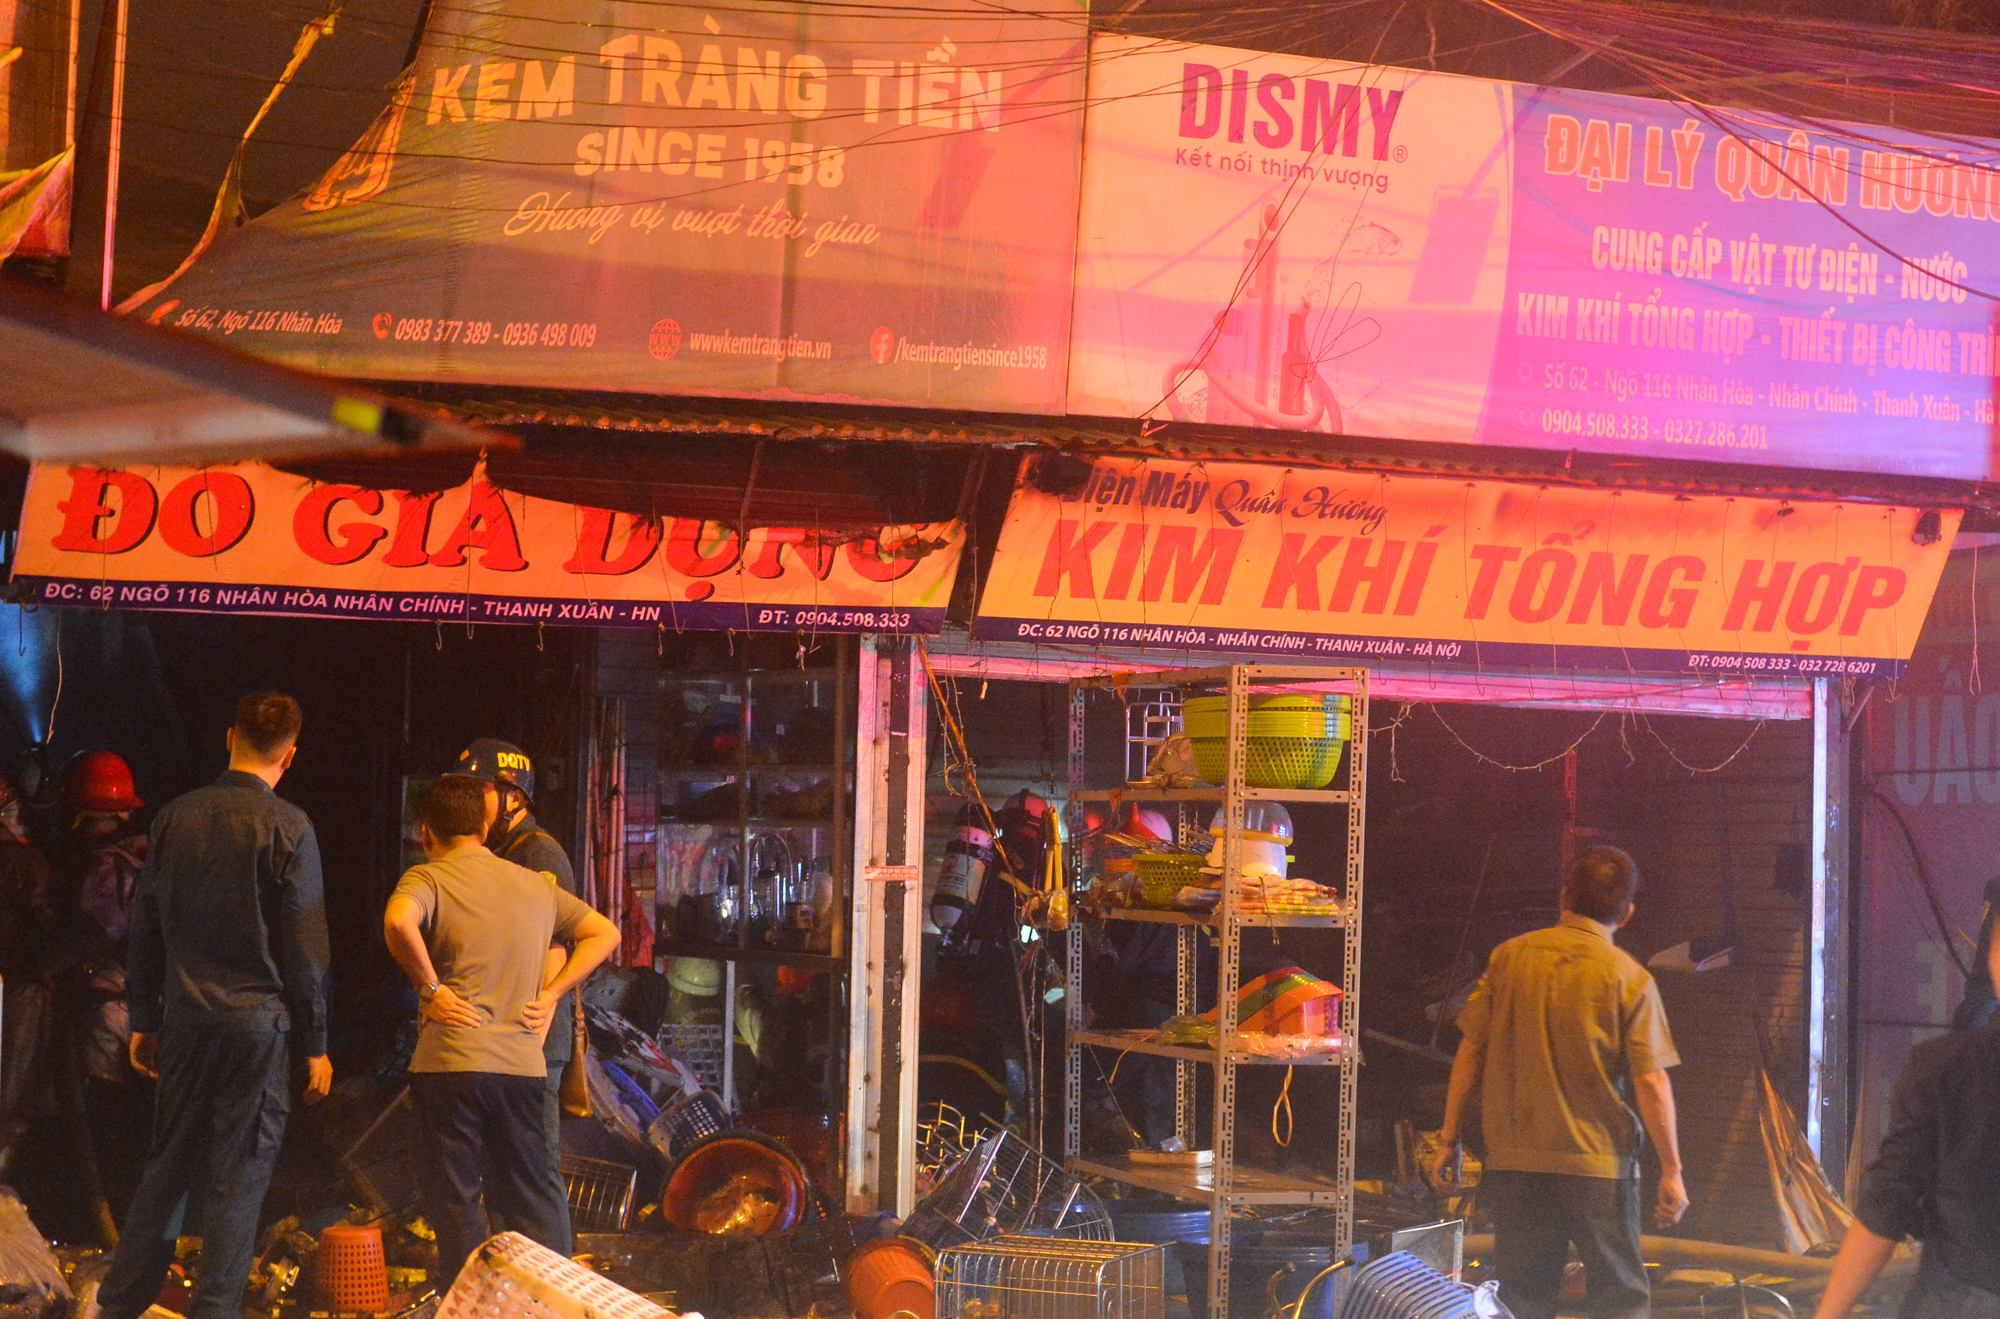 Ảnh, clip: Hiện trường vụ cháy 3 kiot ở Hà Nội trong đêm, nhiều người thoát nạn - Ảnh 7.